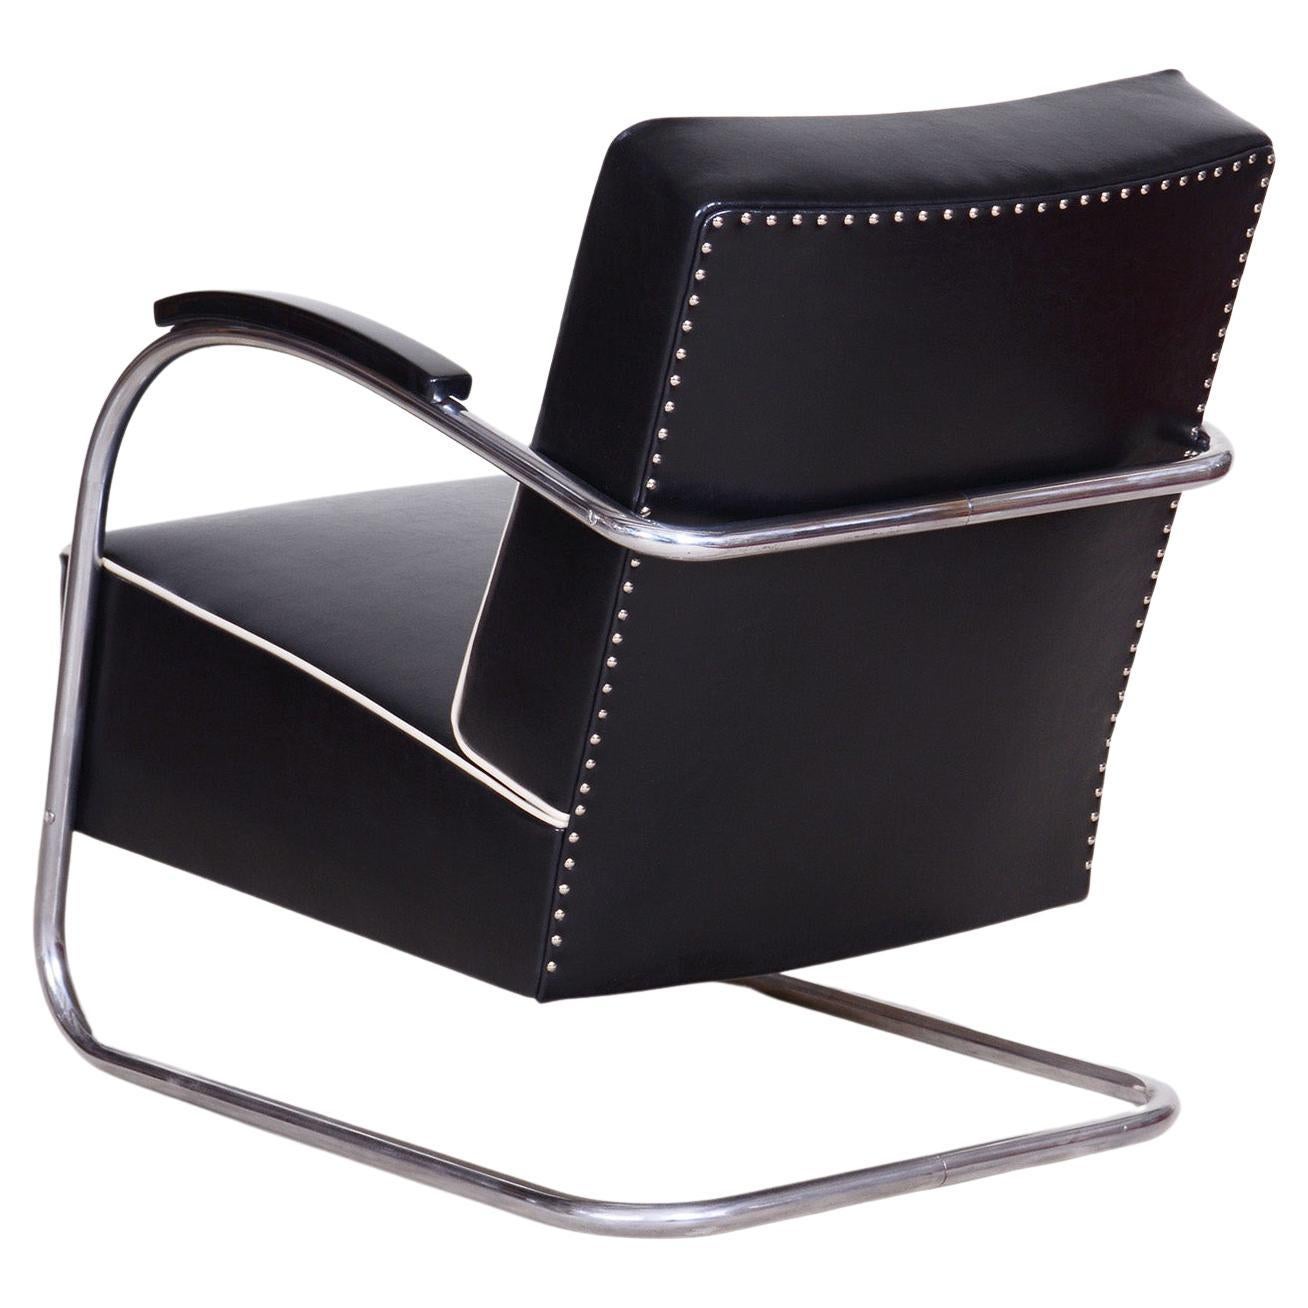 Schwarzer Sessel aus schwarzem Leder, Tschechien, 1930er Jahre, hergestellt von Mucke-Melder und vollständig restauriert